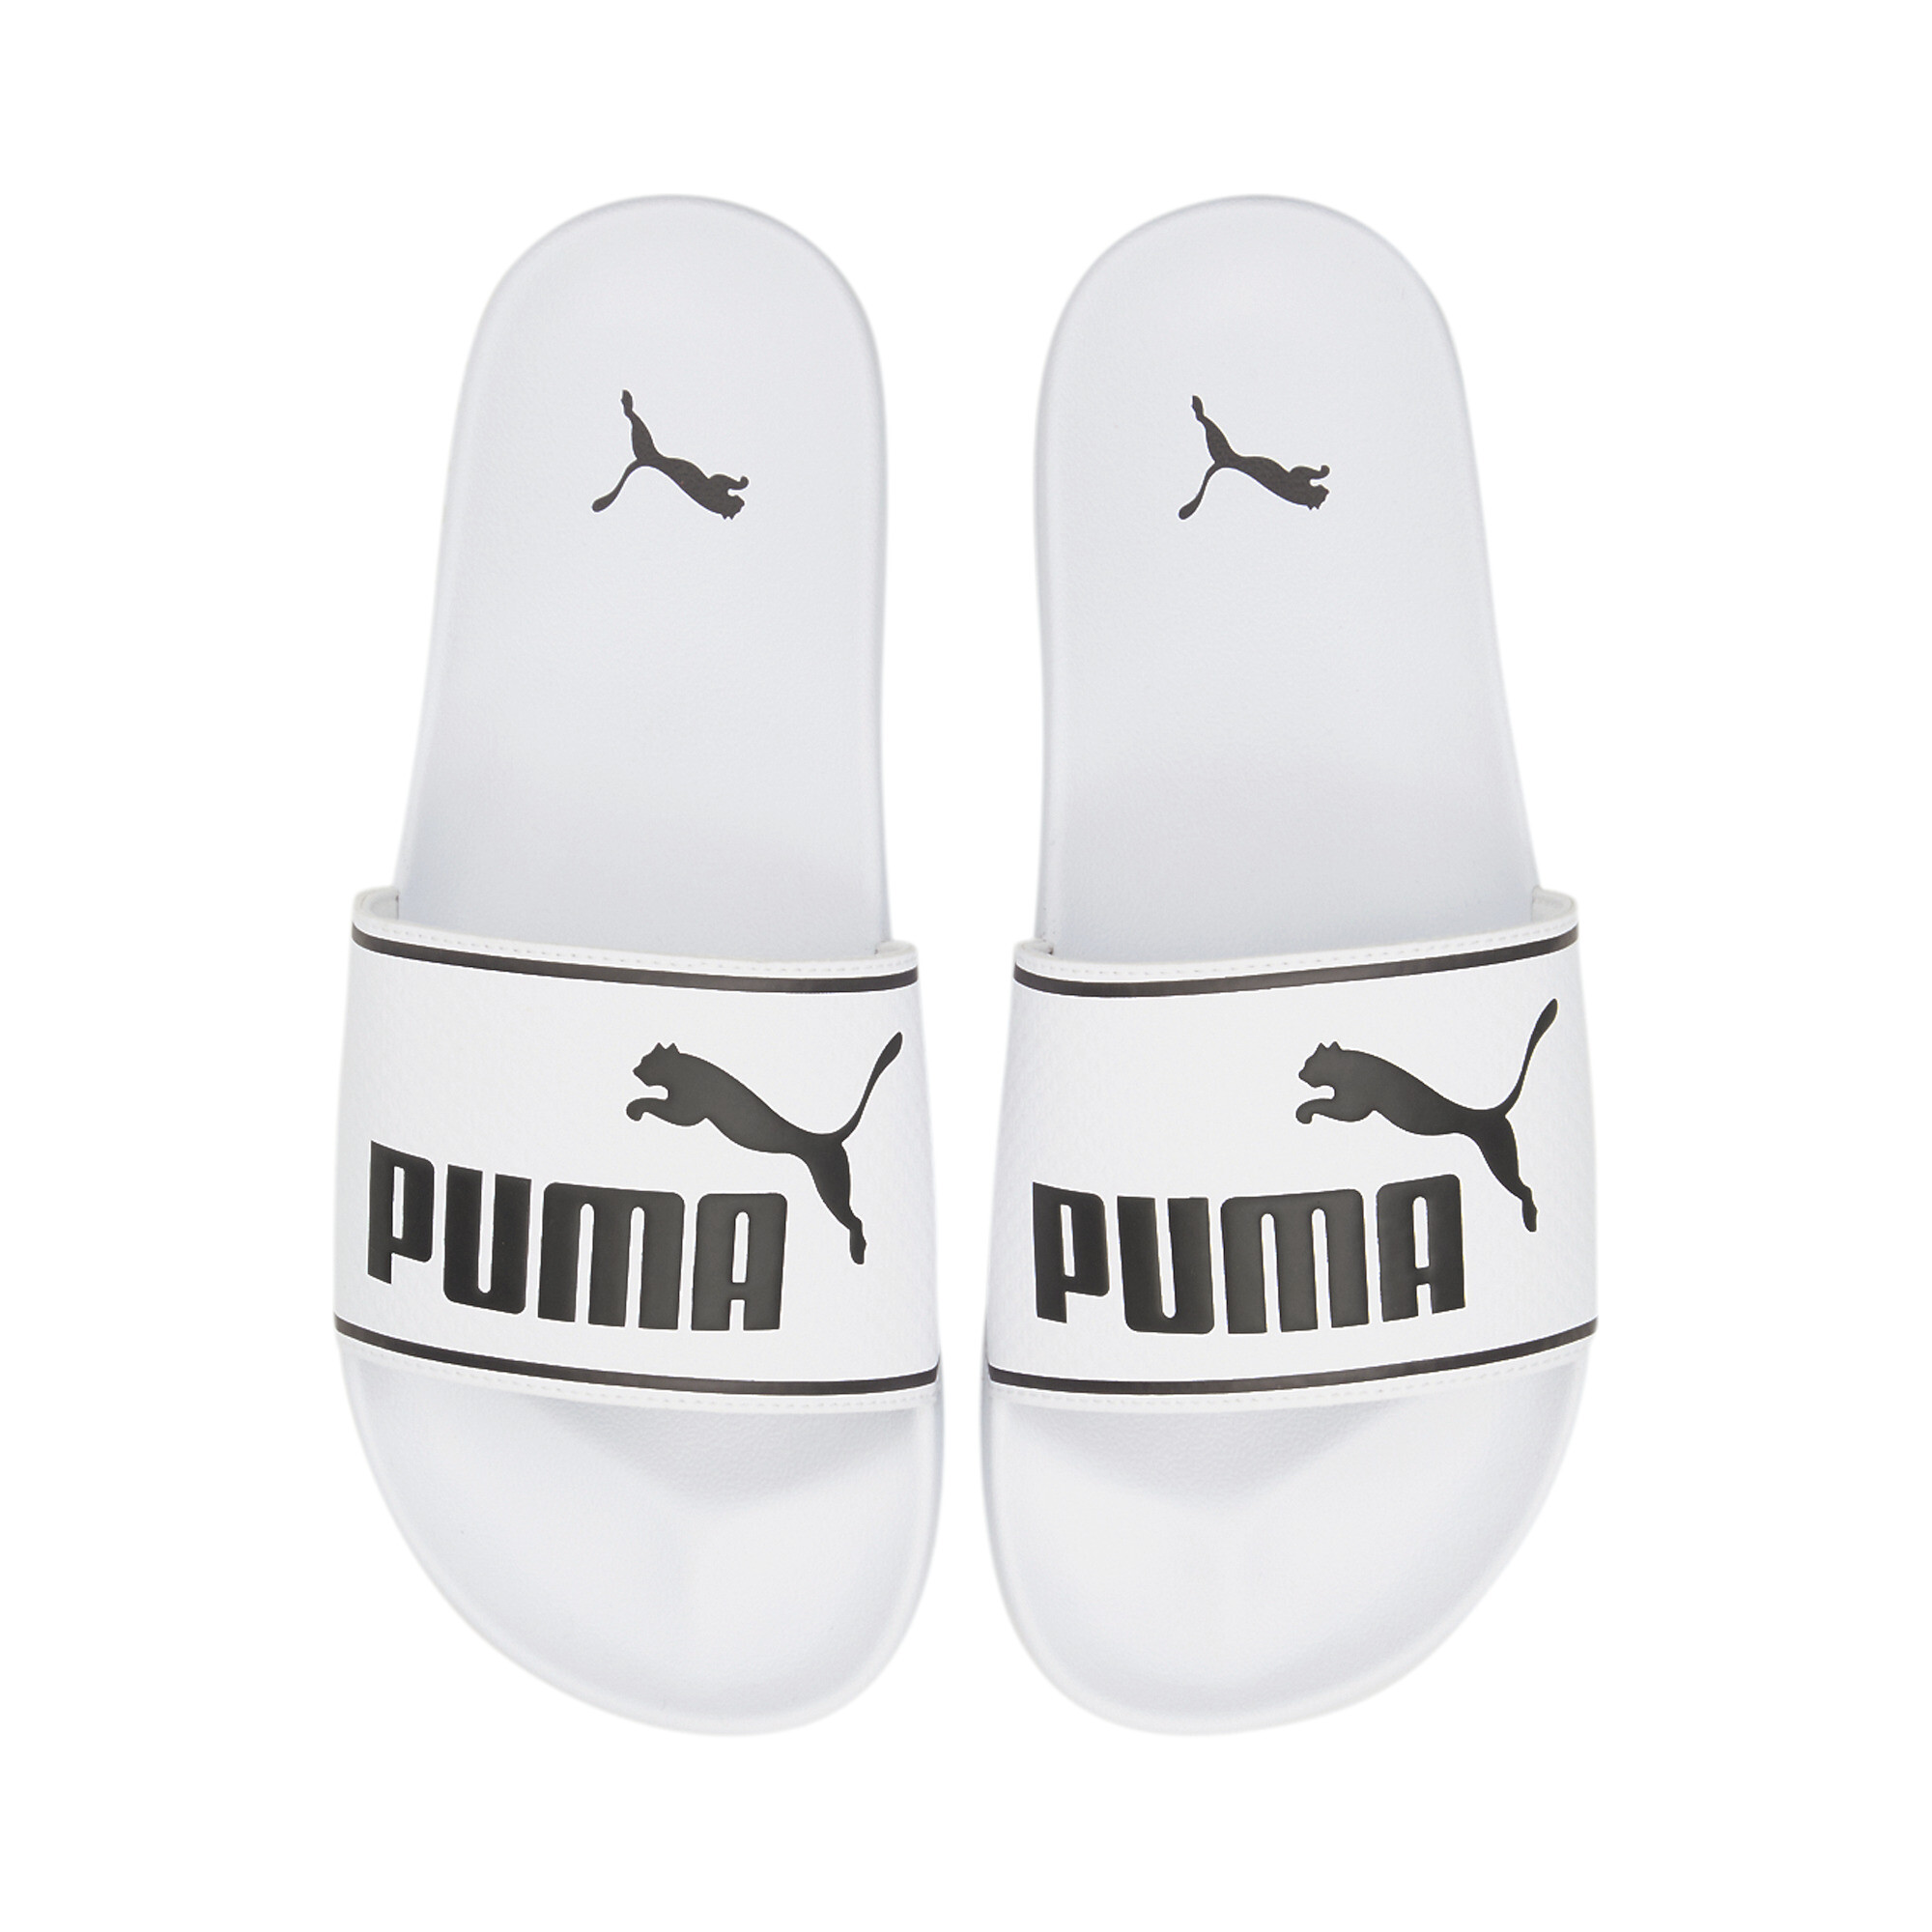 Men's PUMA Leadcat 2.0 Sandals In White, Size EU 44.5